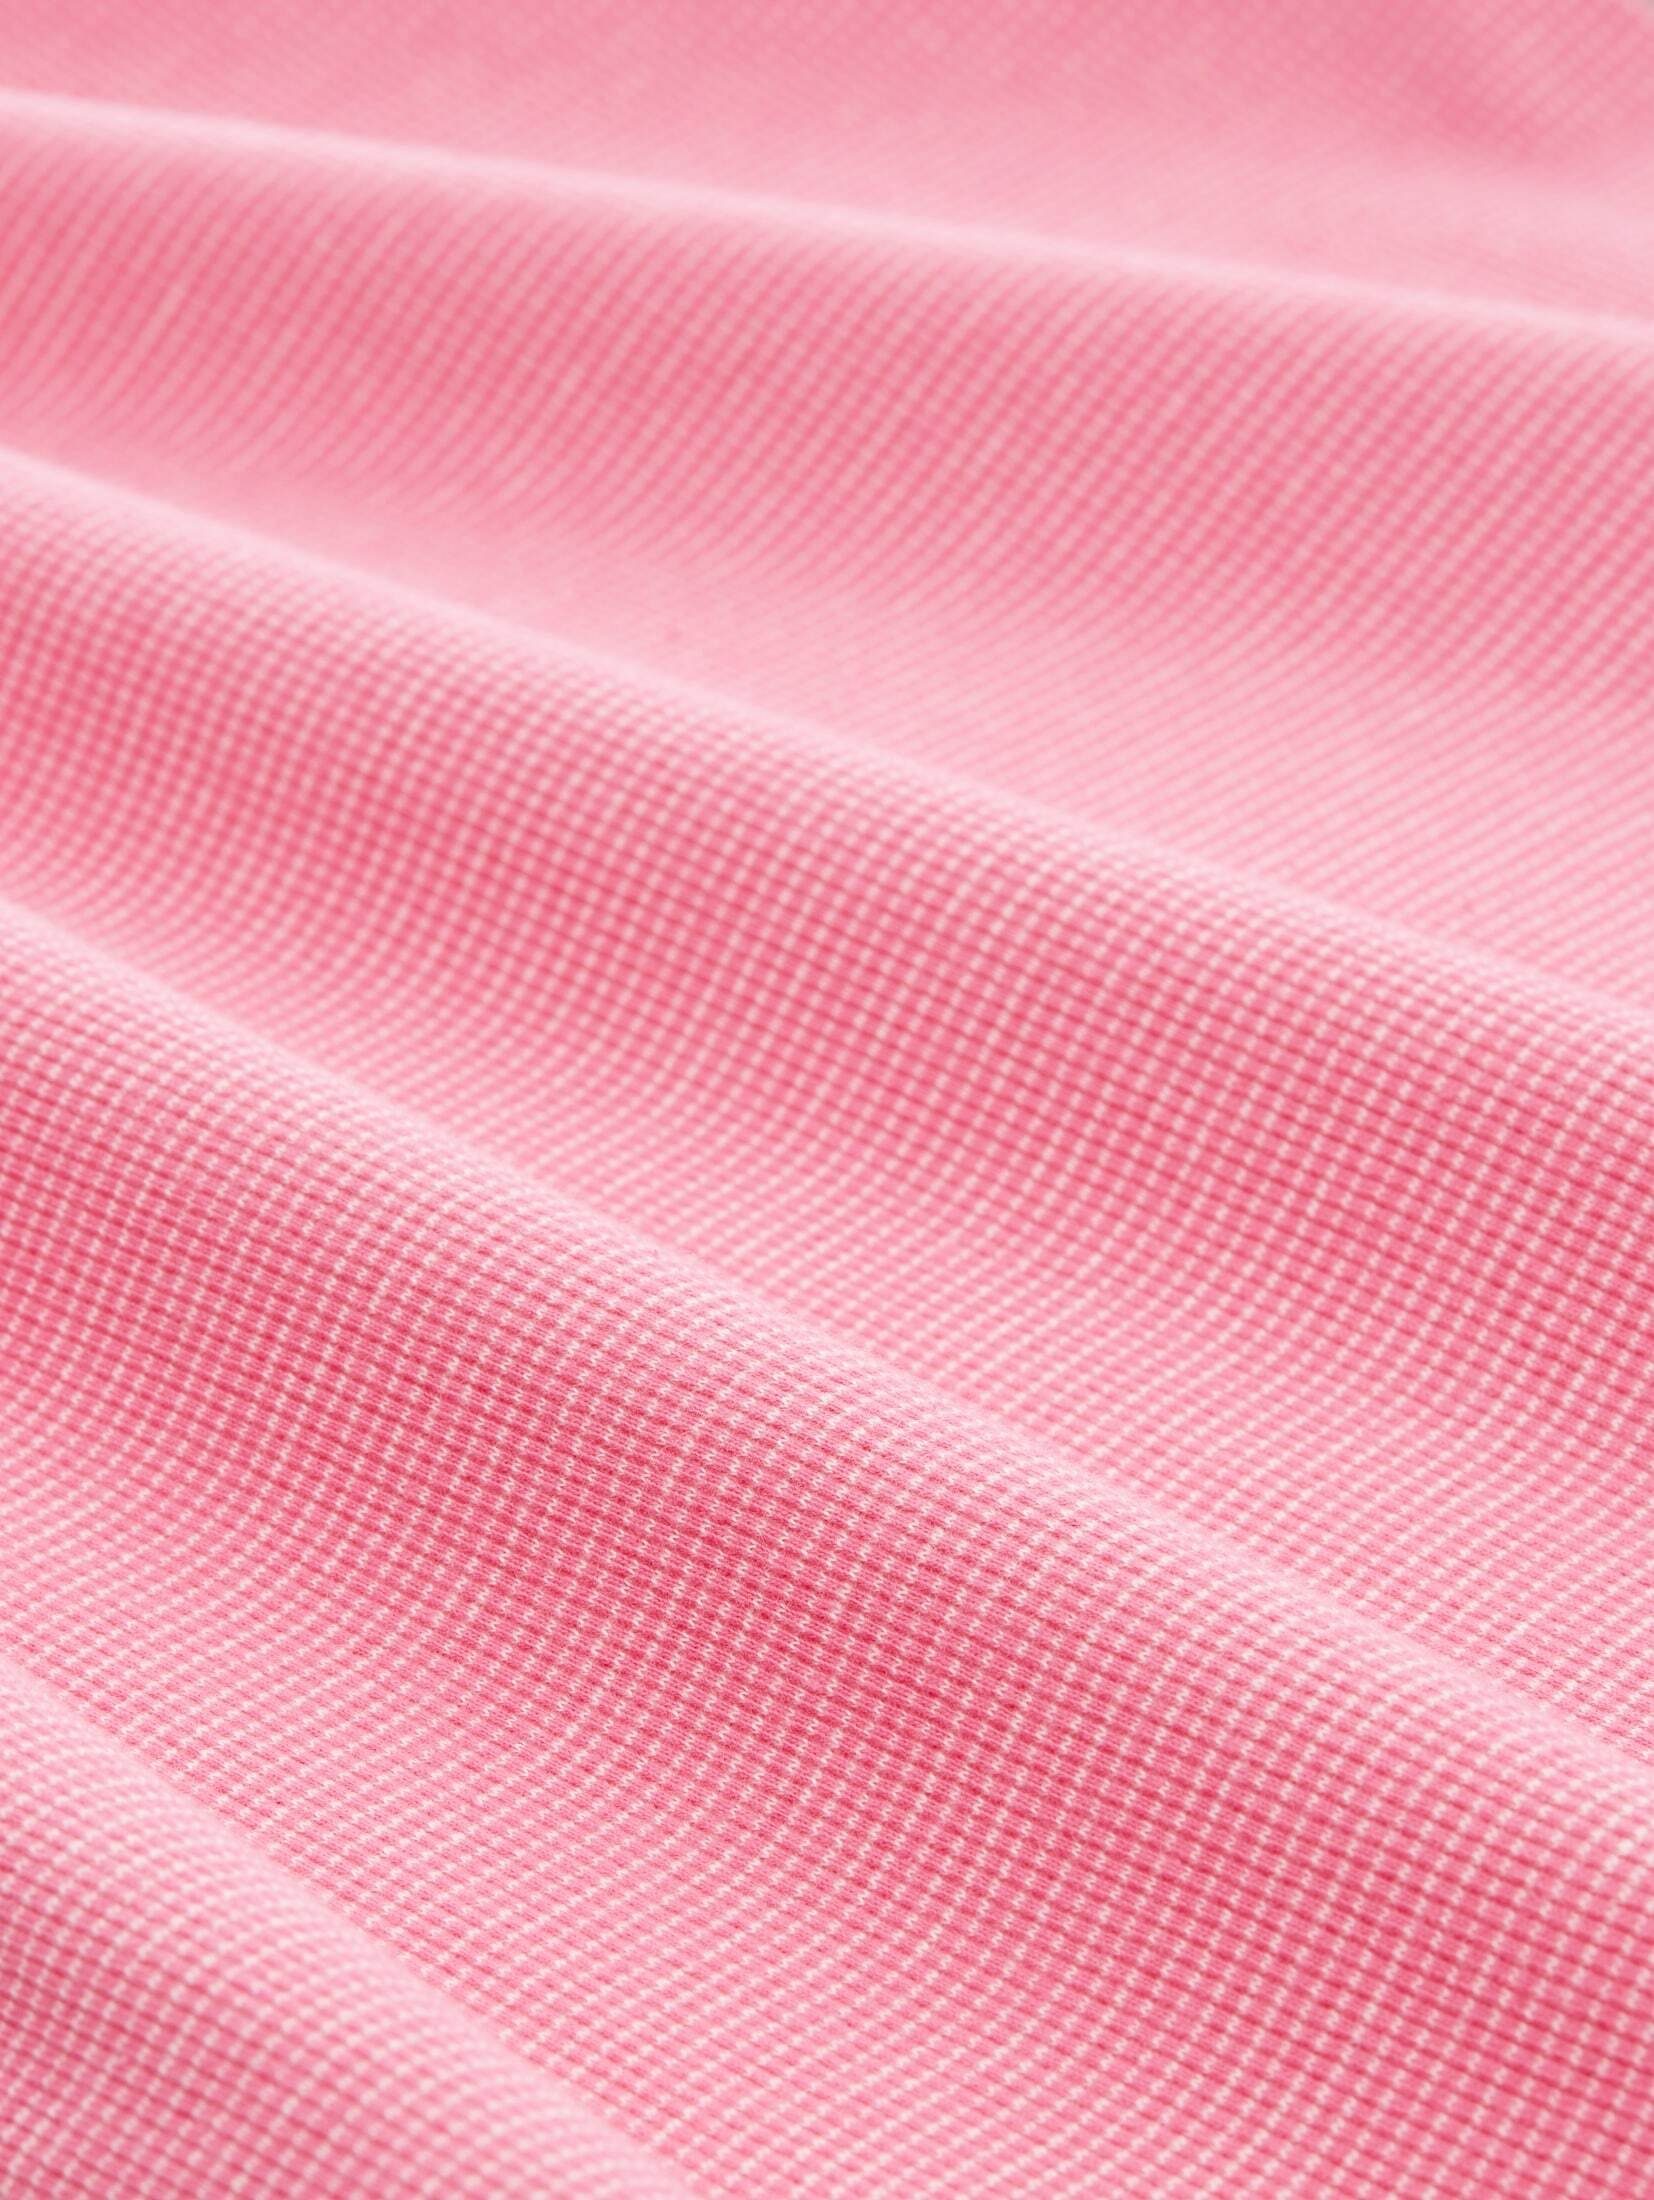 TAILOR Langarmshirt mit T-Shirt TOM stripe ck Bio-Baumwolle pink offwhite